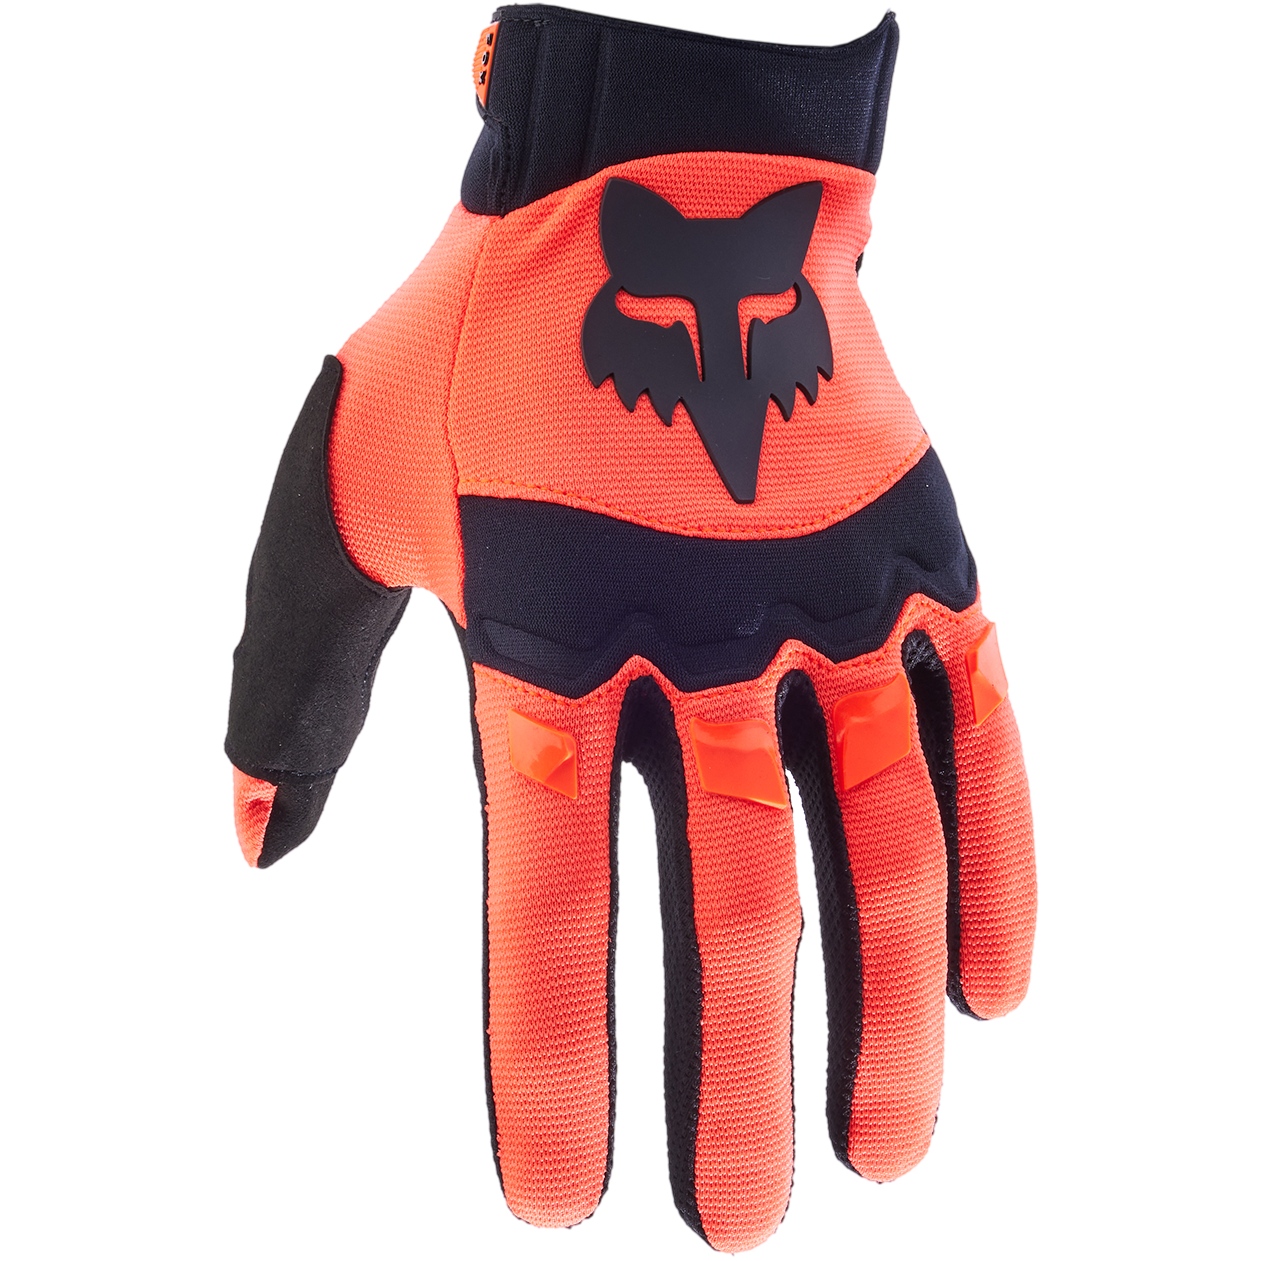 Produktbild von FOX Dirtpaw MTB Handschuhe - fluorescent orange